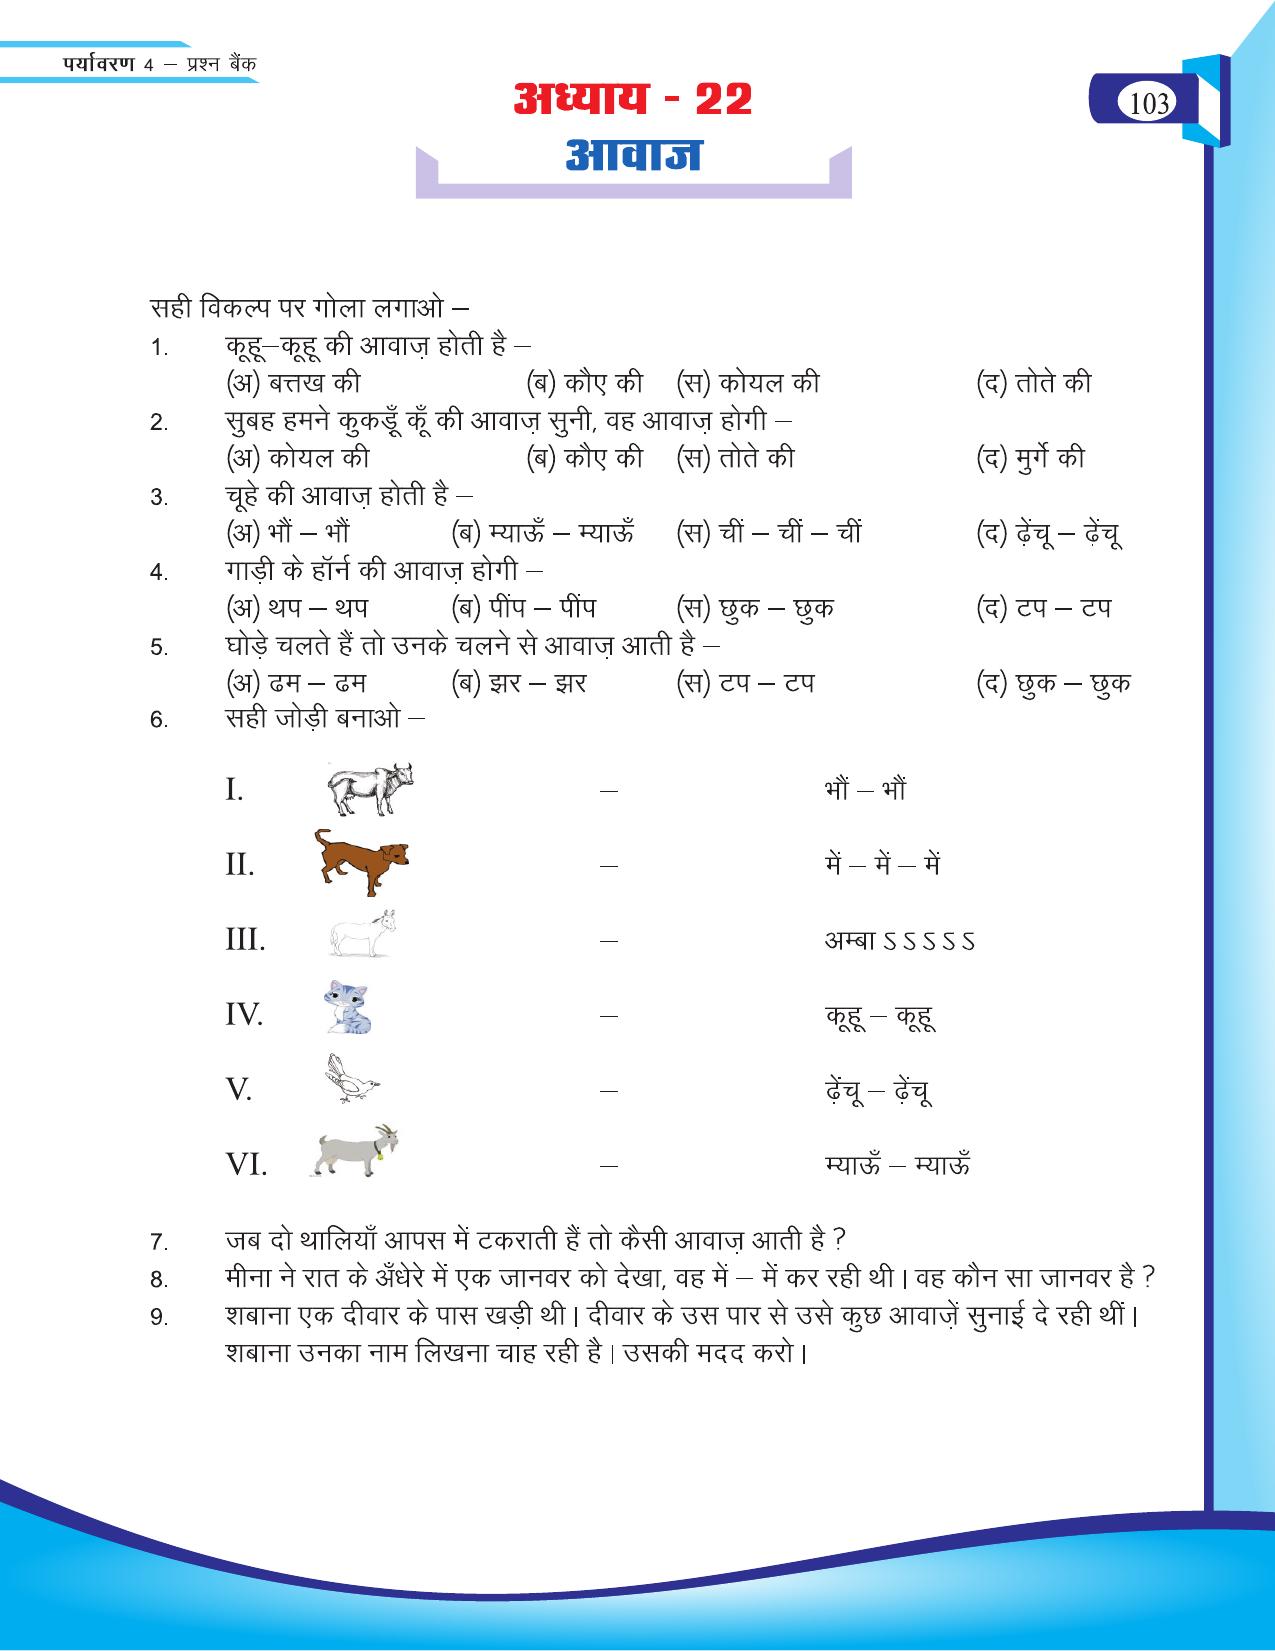 Chhattisgarh Board Class 4 EVS Question Bank 2015-16 - Page 32